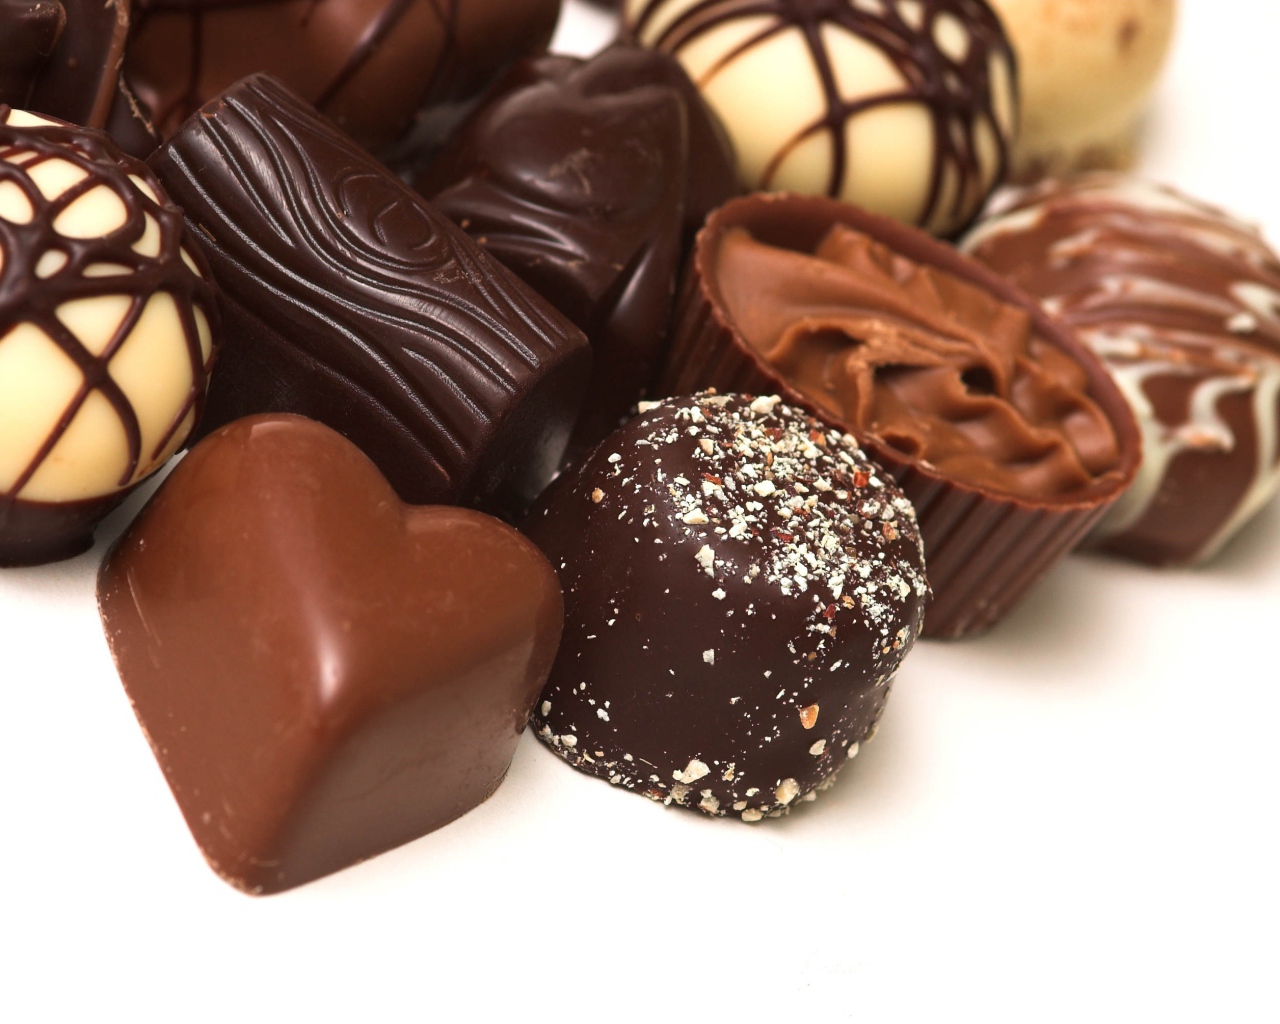 Разные шоколадные конфеты на белом фоне 